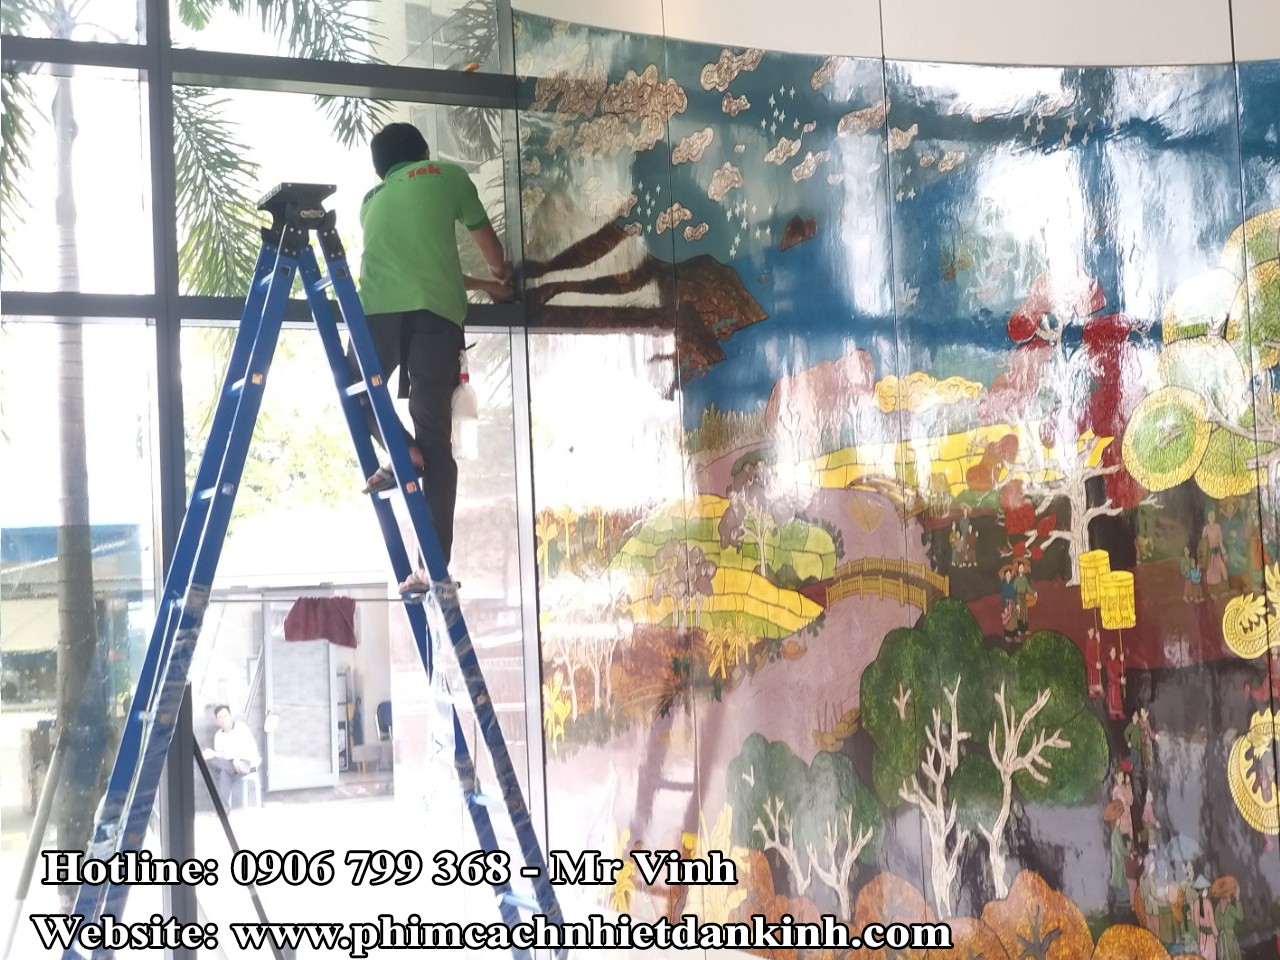 dán phim cách nhiệt toà nhà văn phòng VCN TOWER Nha Trang